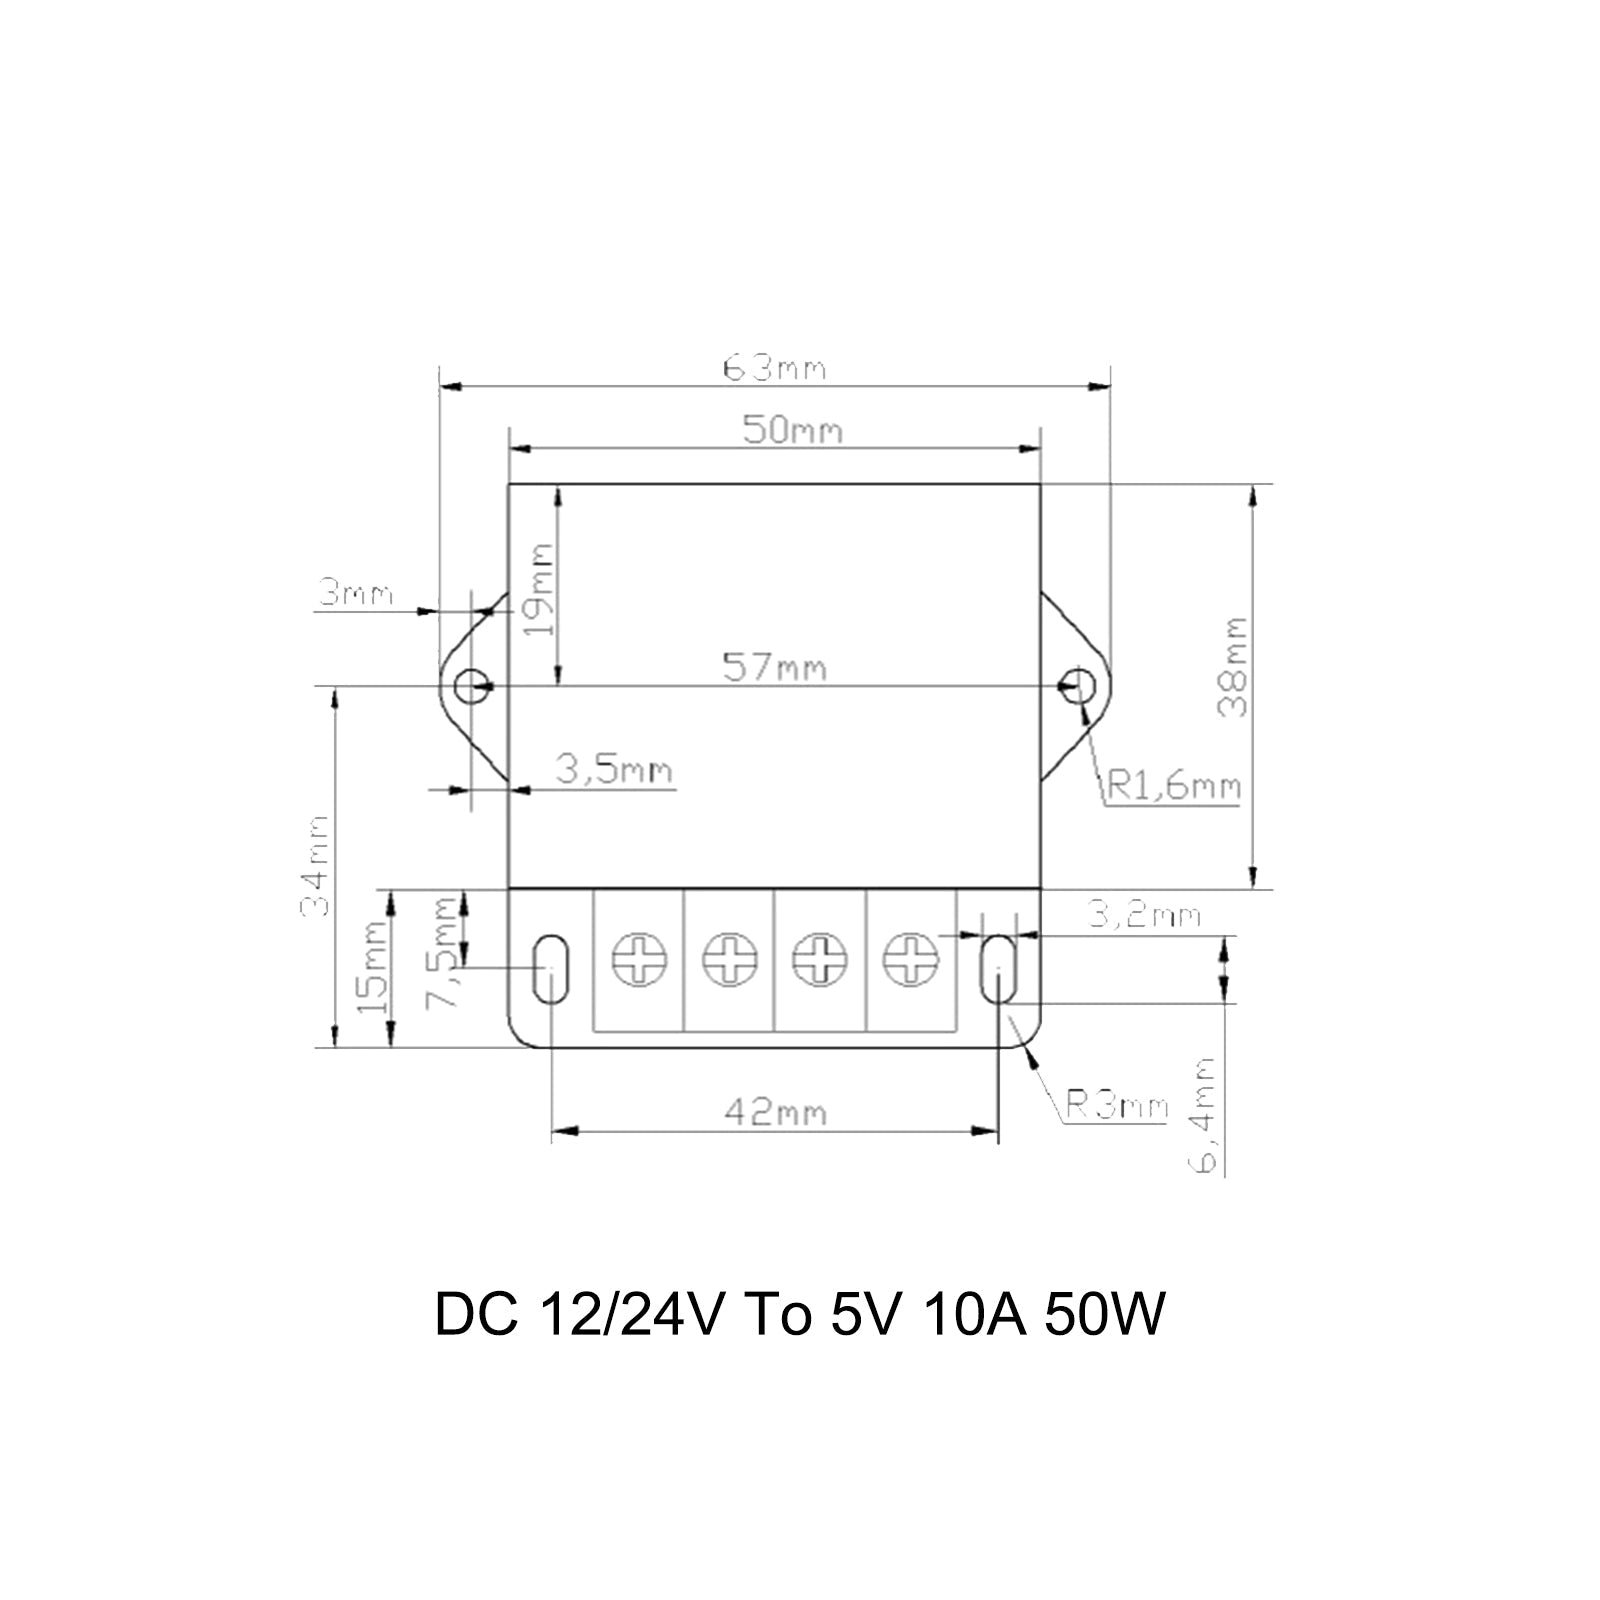 Régulateur de tension cc convertisseur abaisseur DC 12/24V à 5V 10A 50W réducteur abaisseur